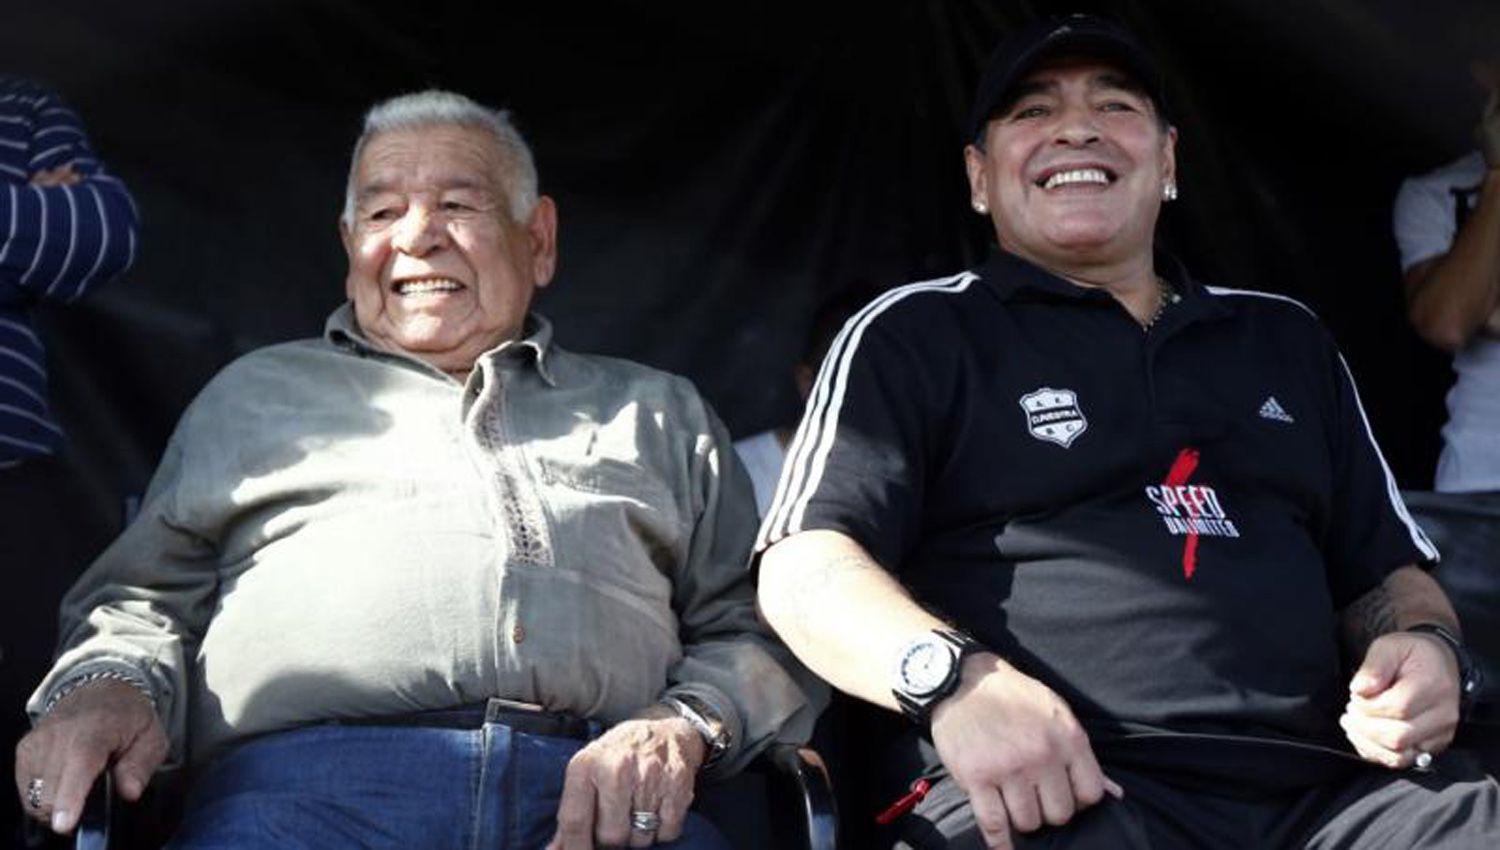 La vida de Maradona habriacutea tenido ascendencia con raices santiaguentildeas